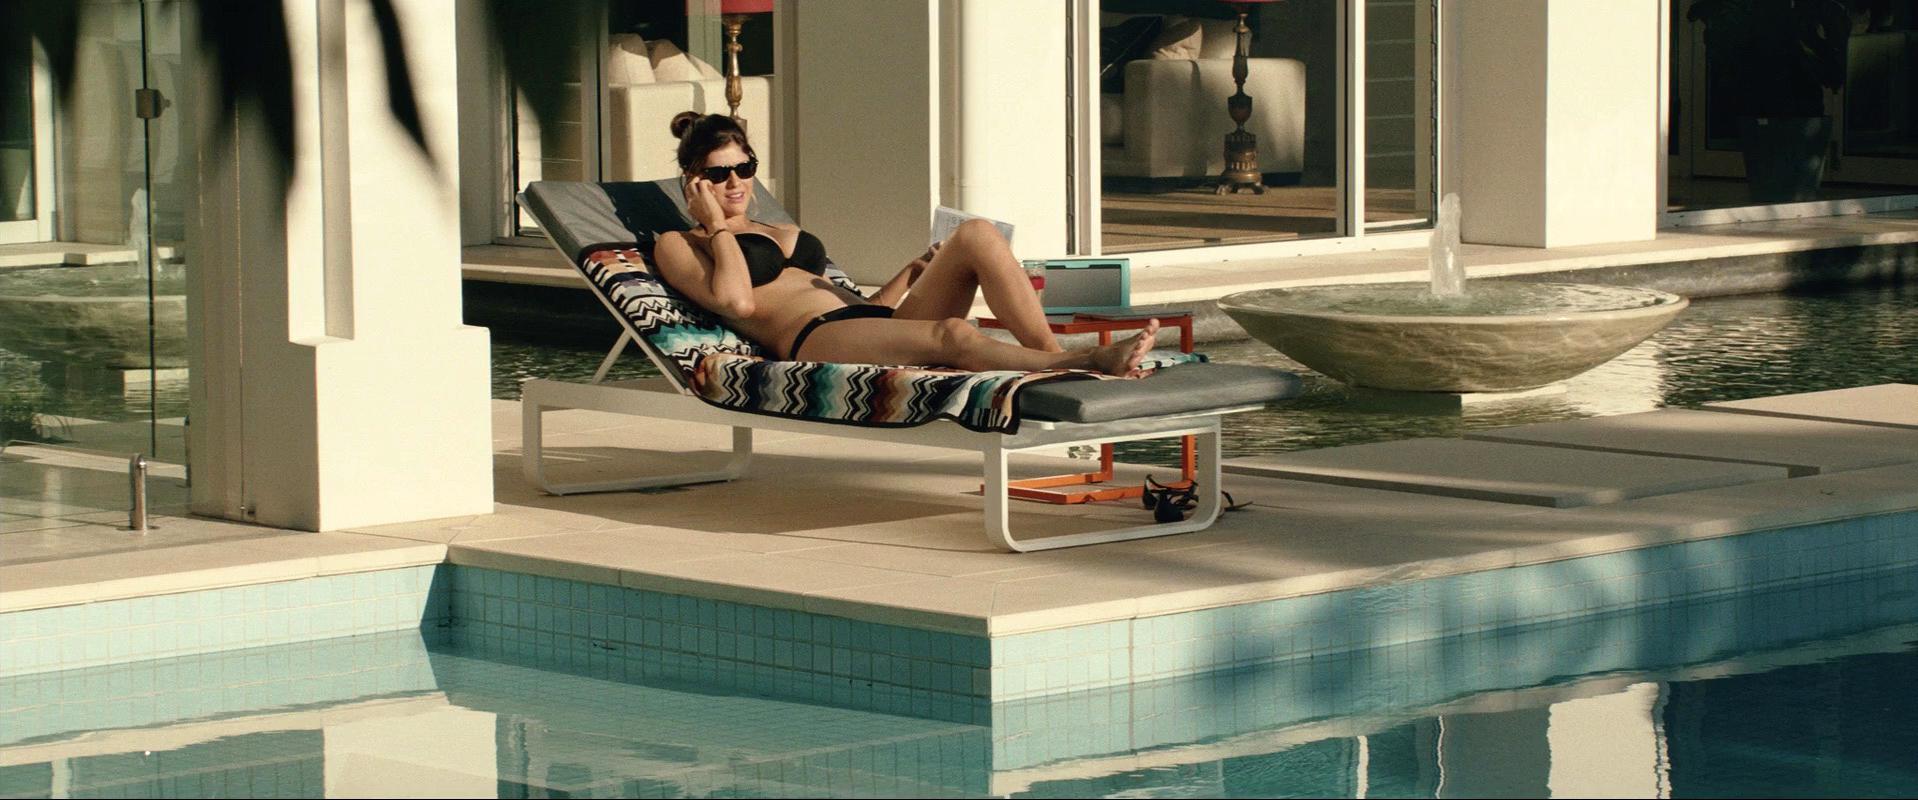 Nude Video Celebs Actress Alexandra Daddario